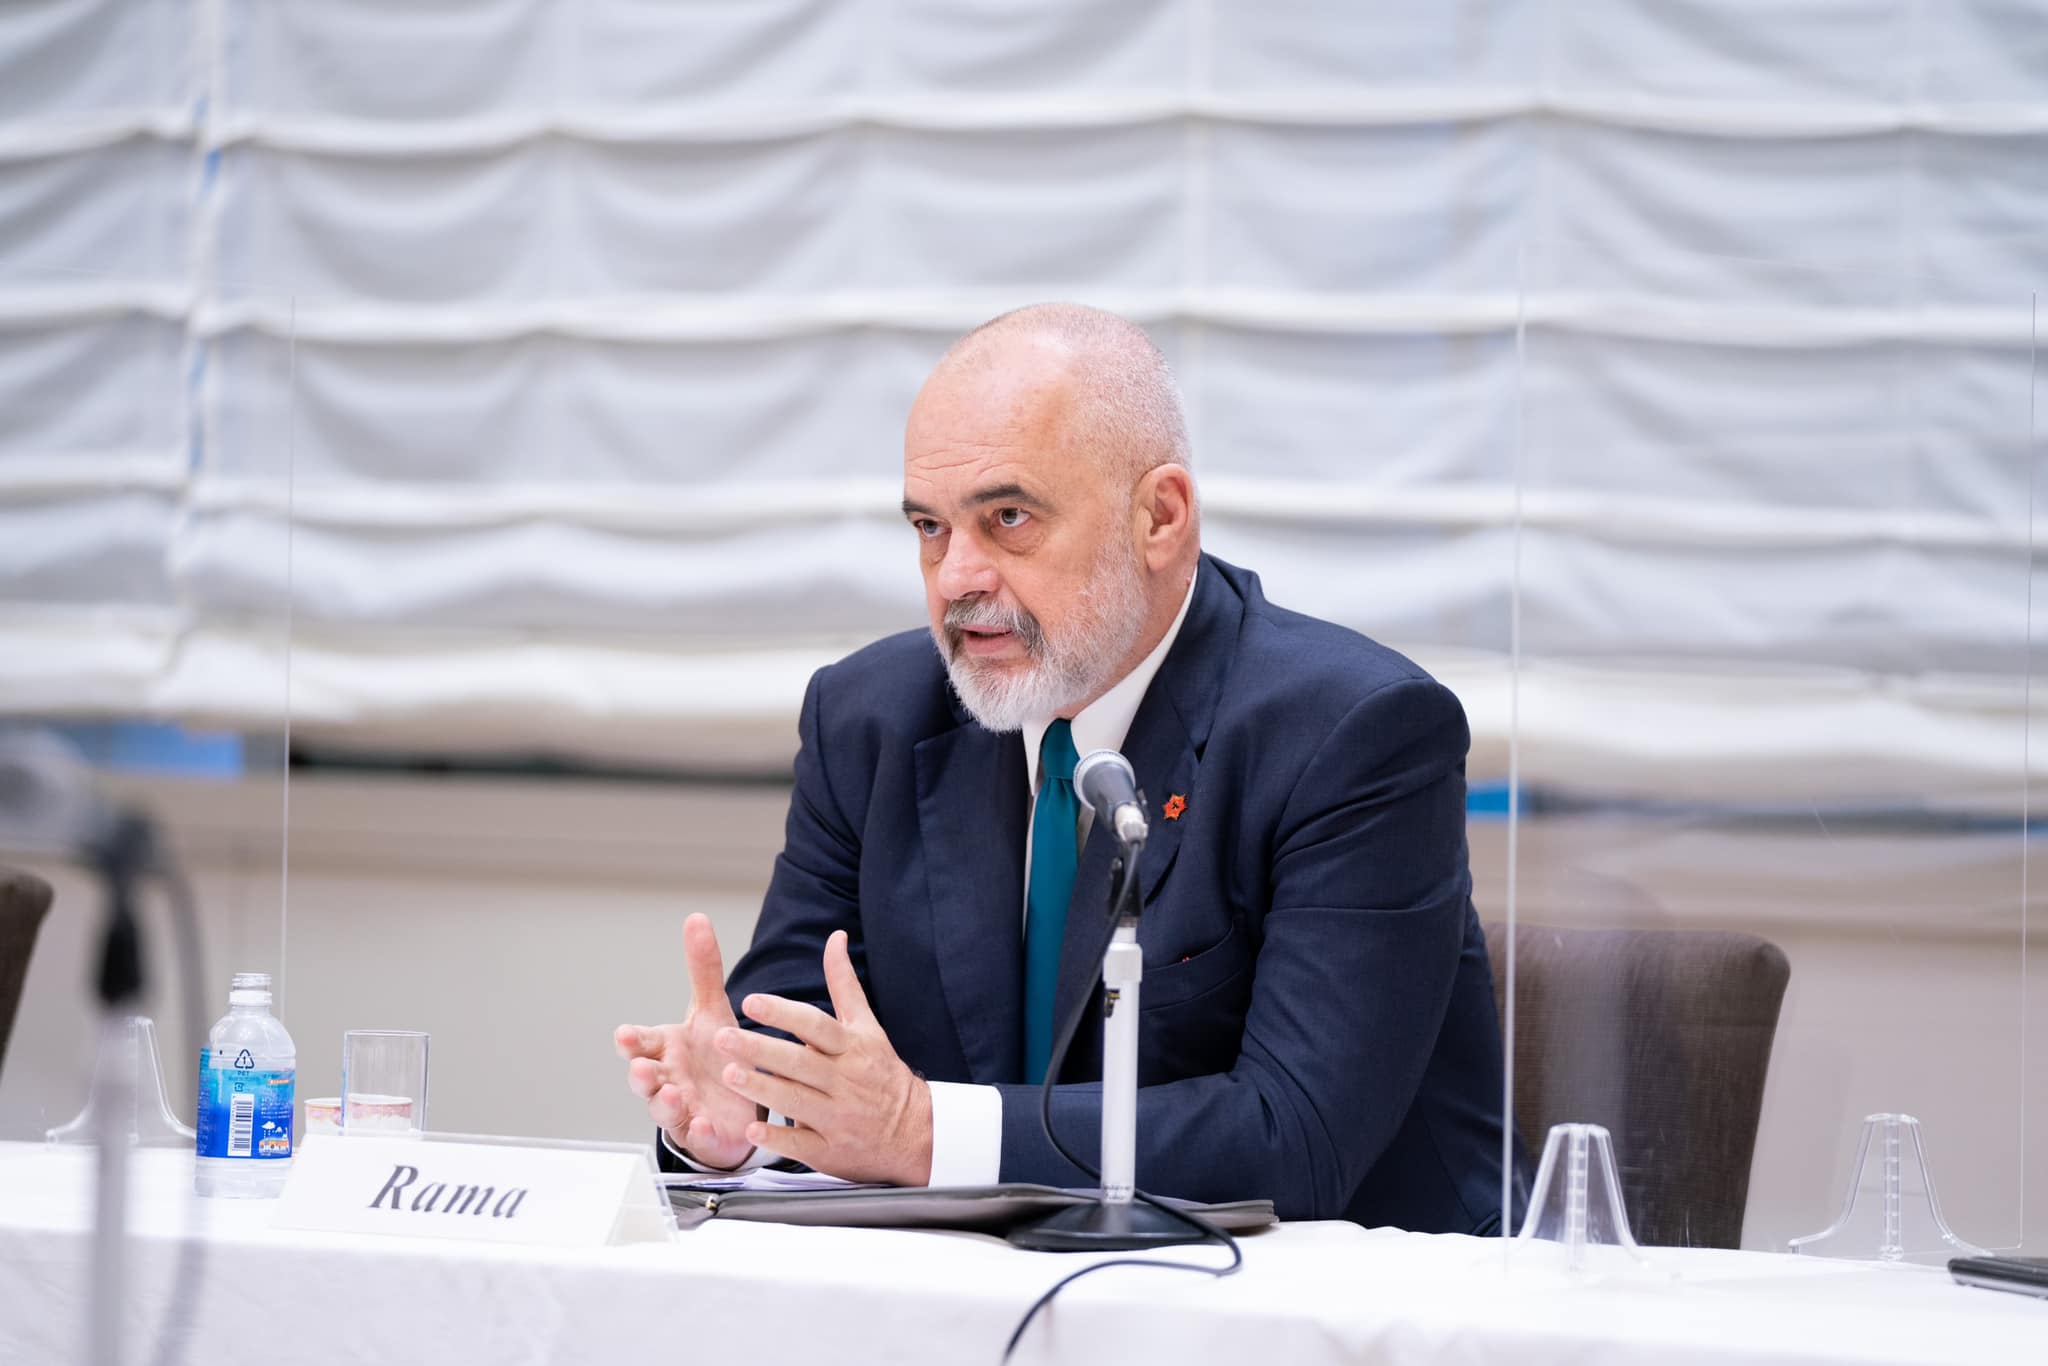 Kryeministri i Shqipërisë, Edi Rama